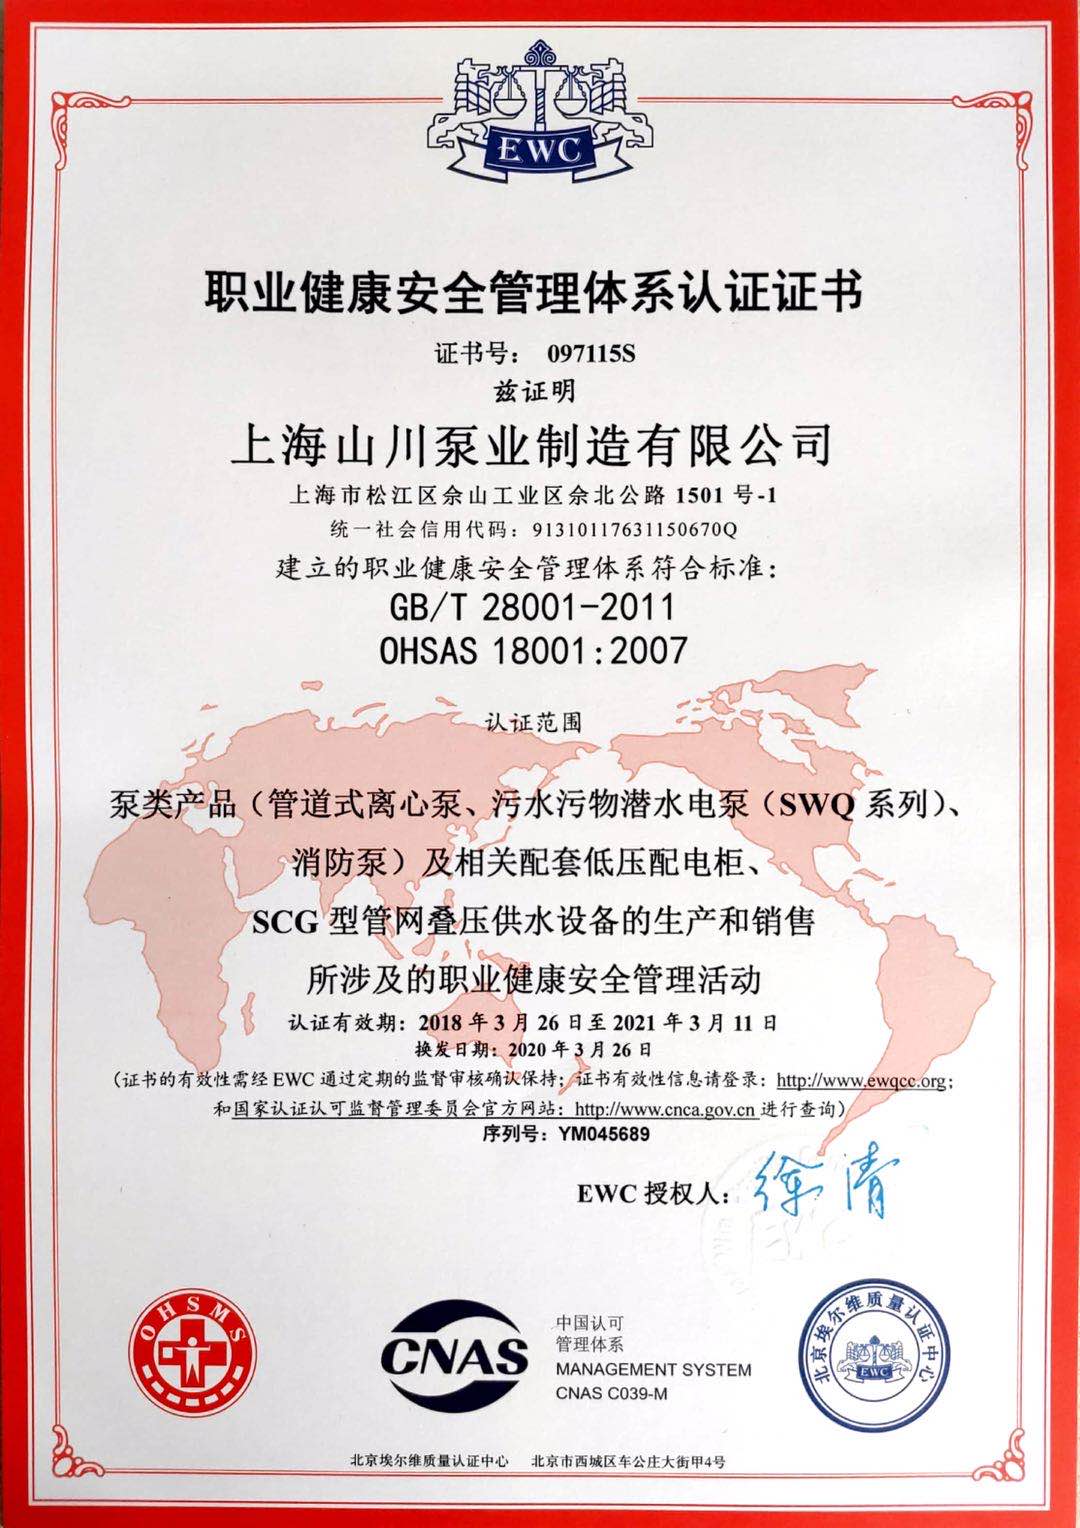 上海山川泵业制造有限公司 职业健康安全管理体系